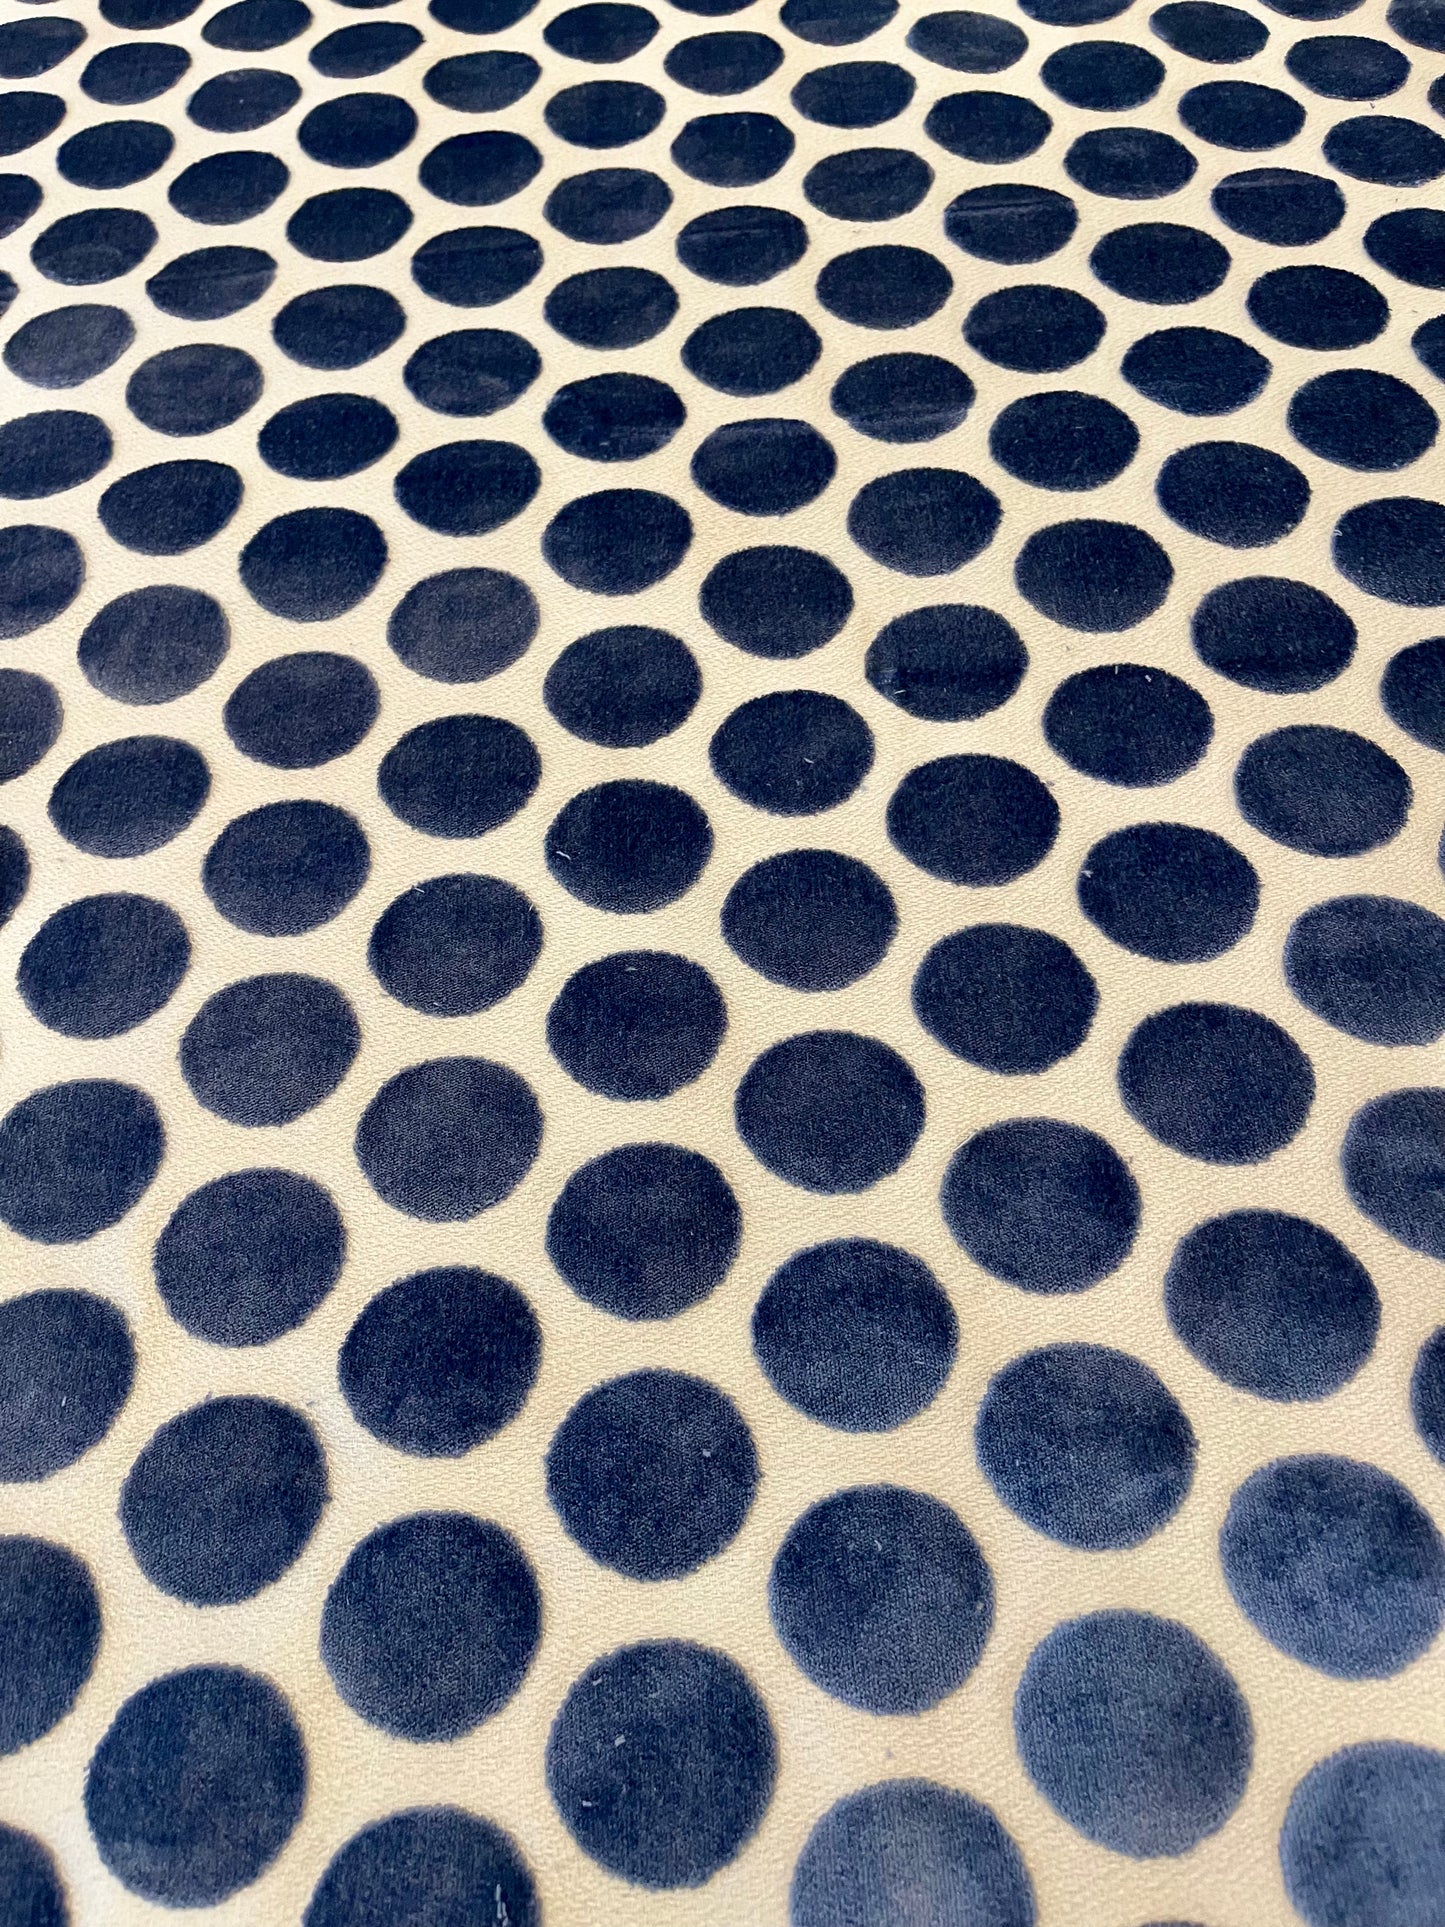 Blue Polka Dot Velvet Fabric